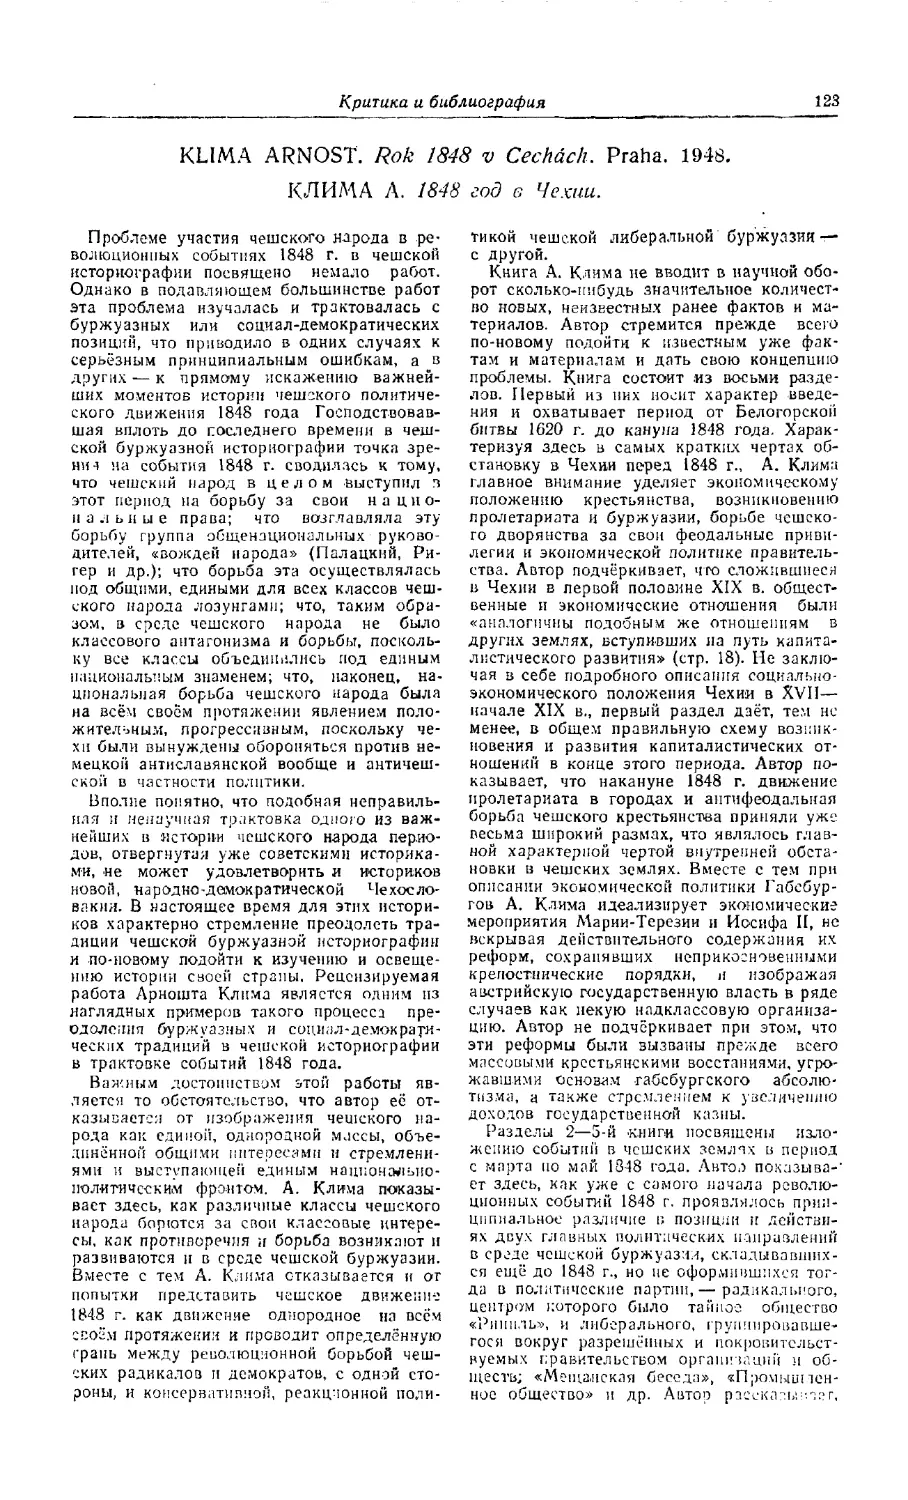 Удальцов И. — Клима А. 1848 год в Чехии